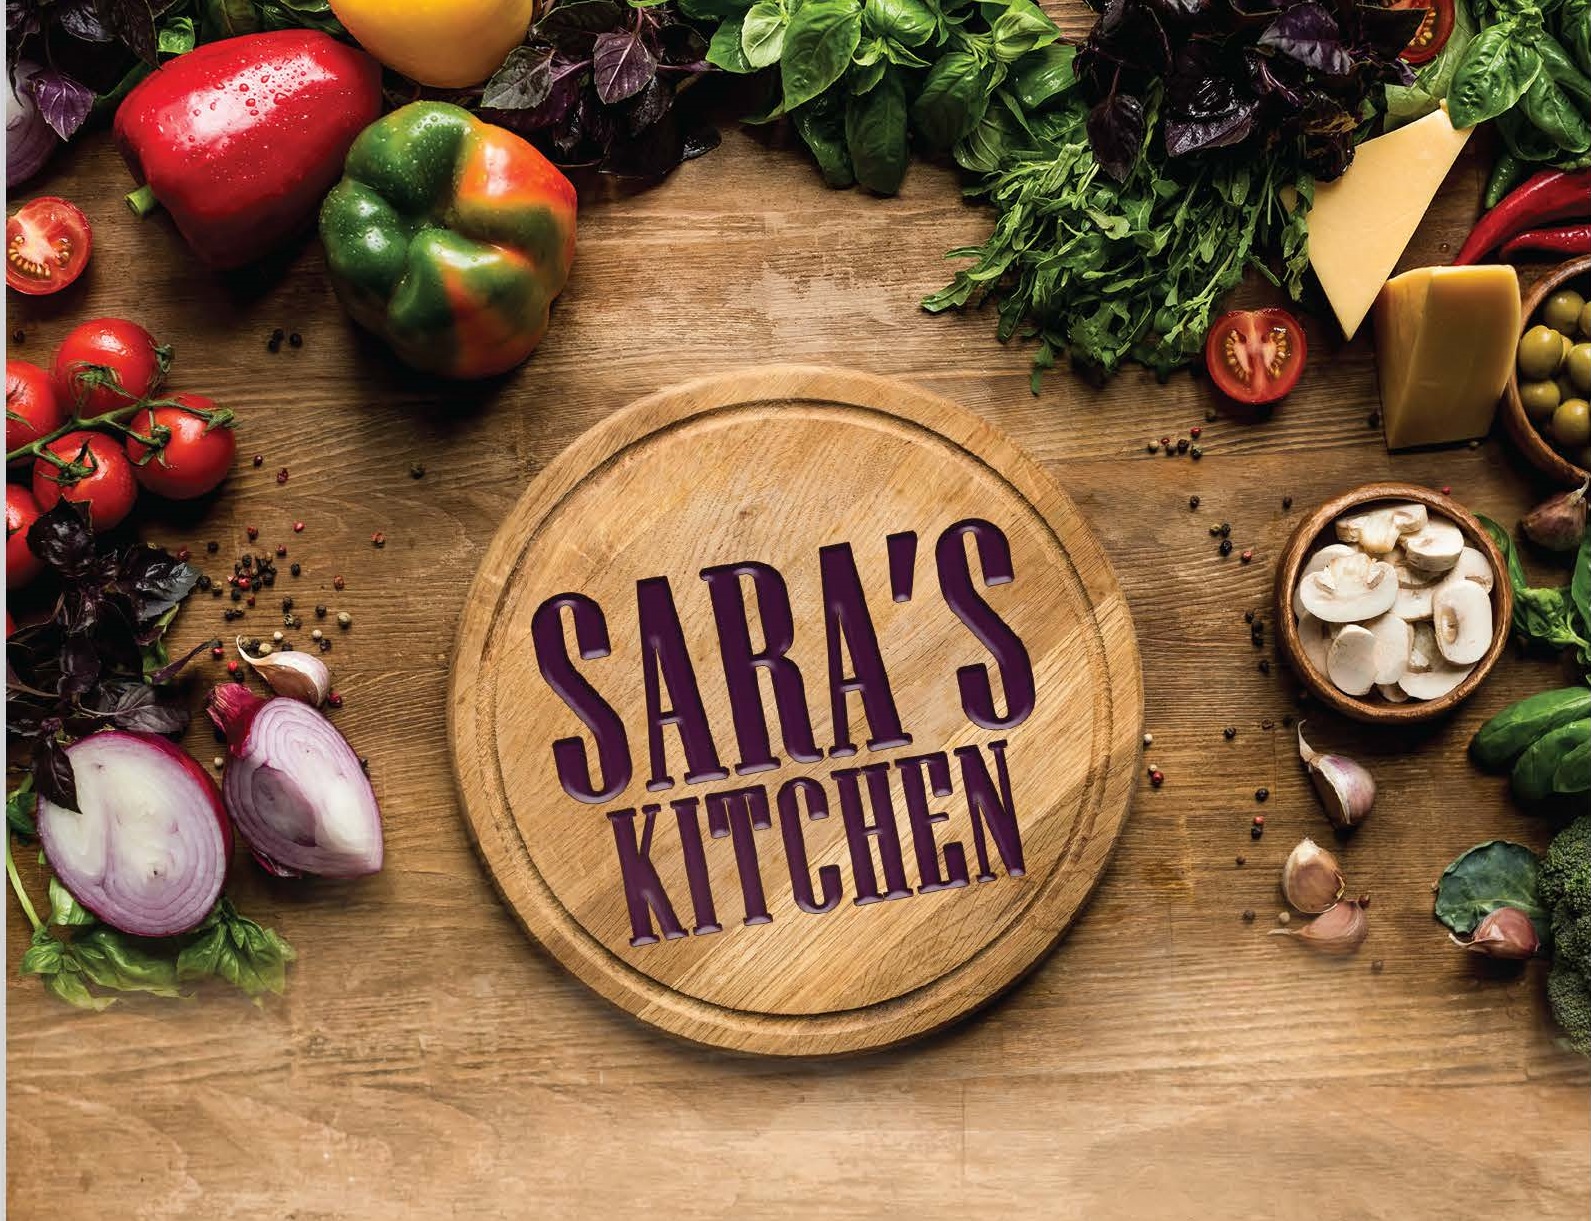 Saras Kitchen